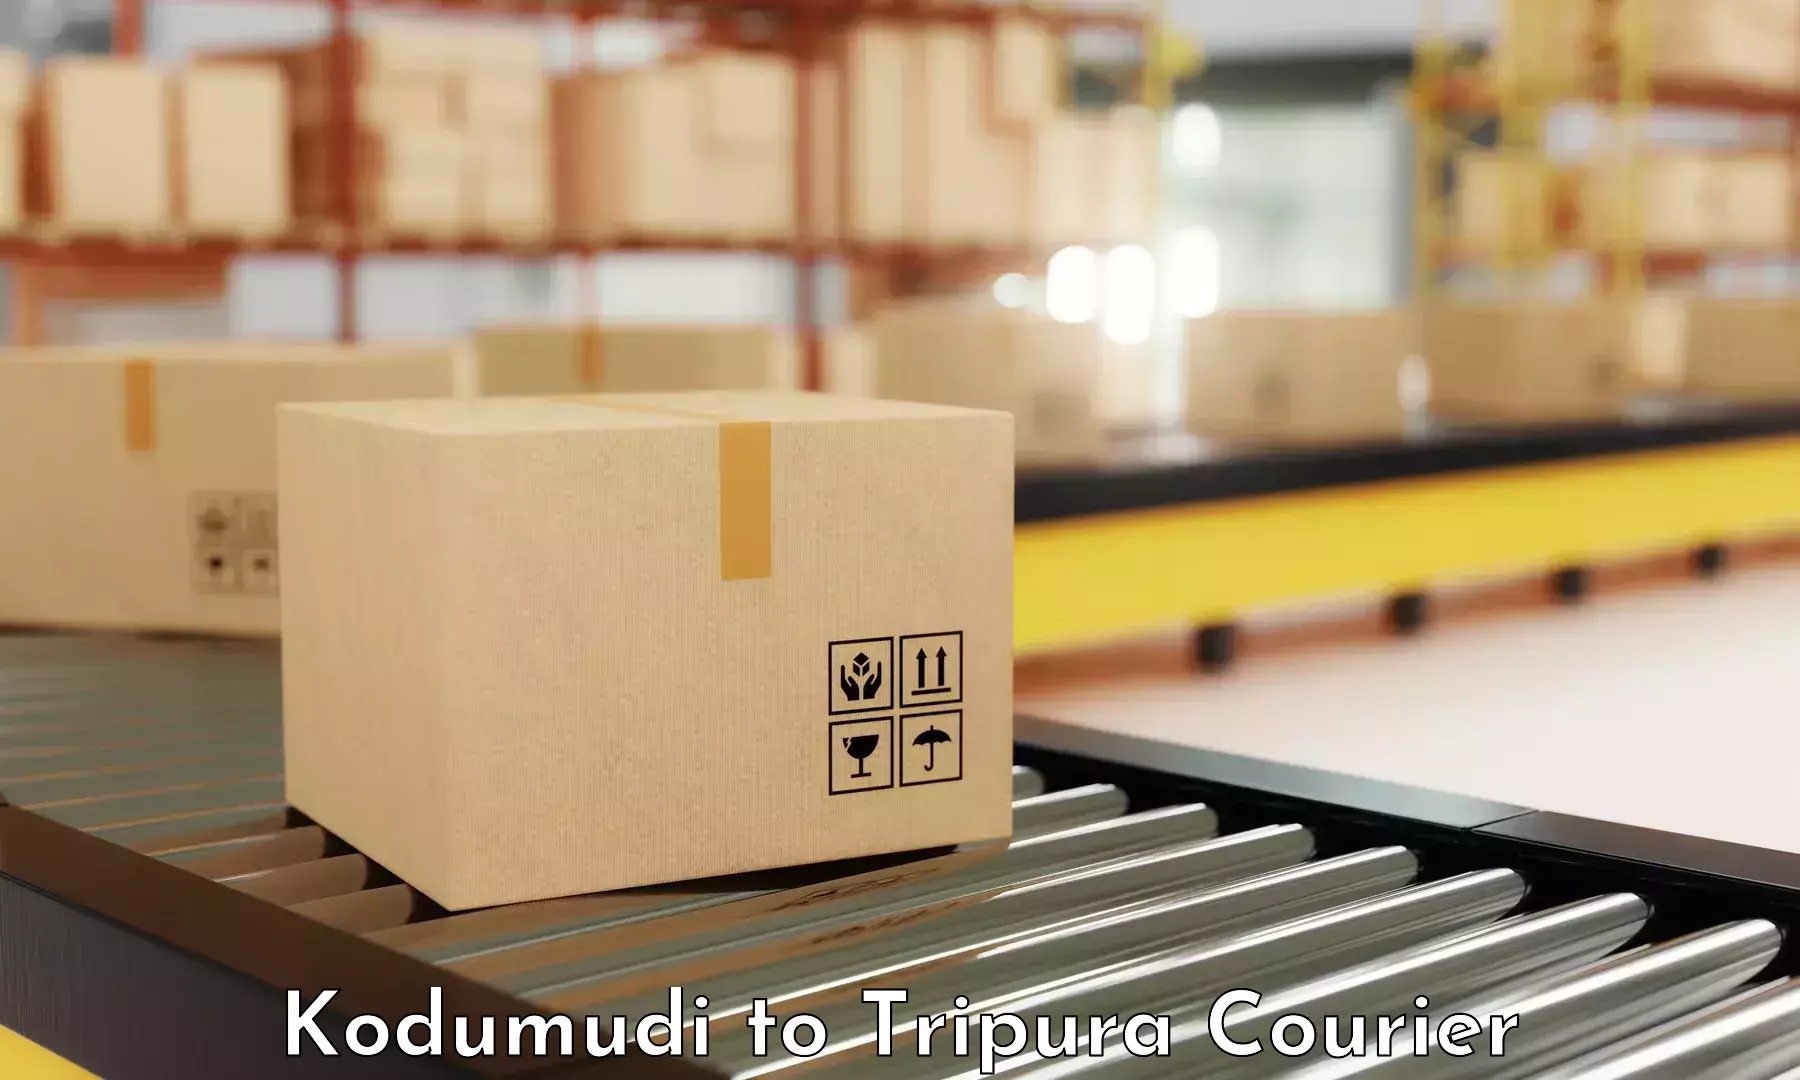 Modern courier technology Kodumudi to Ambassa